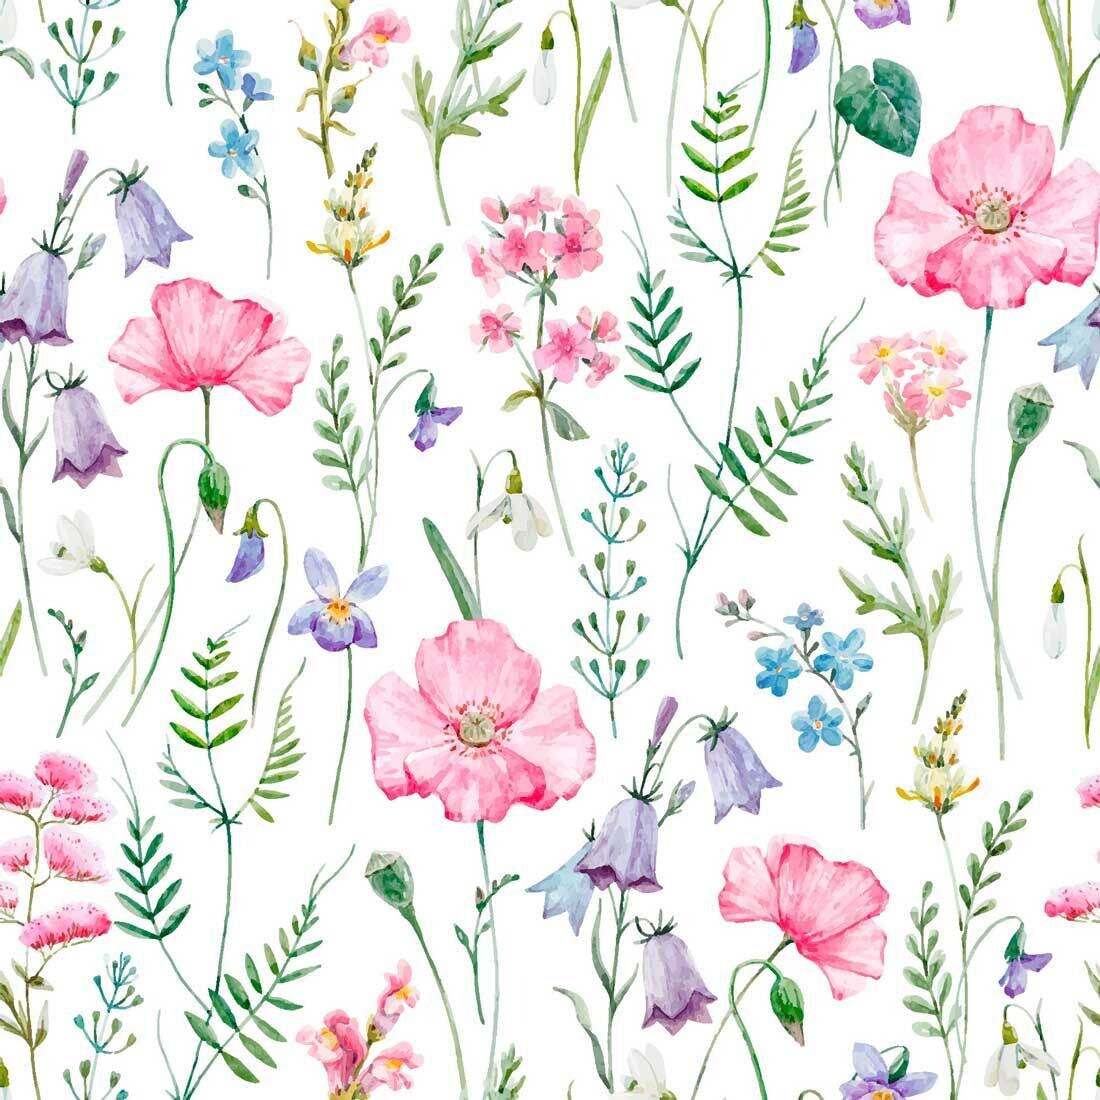 Decoupage Paper Napkins - Floral - Romantic Flowers